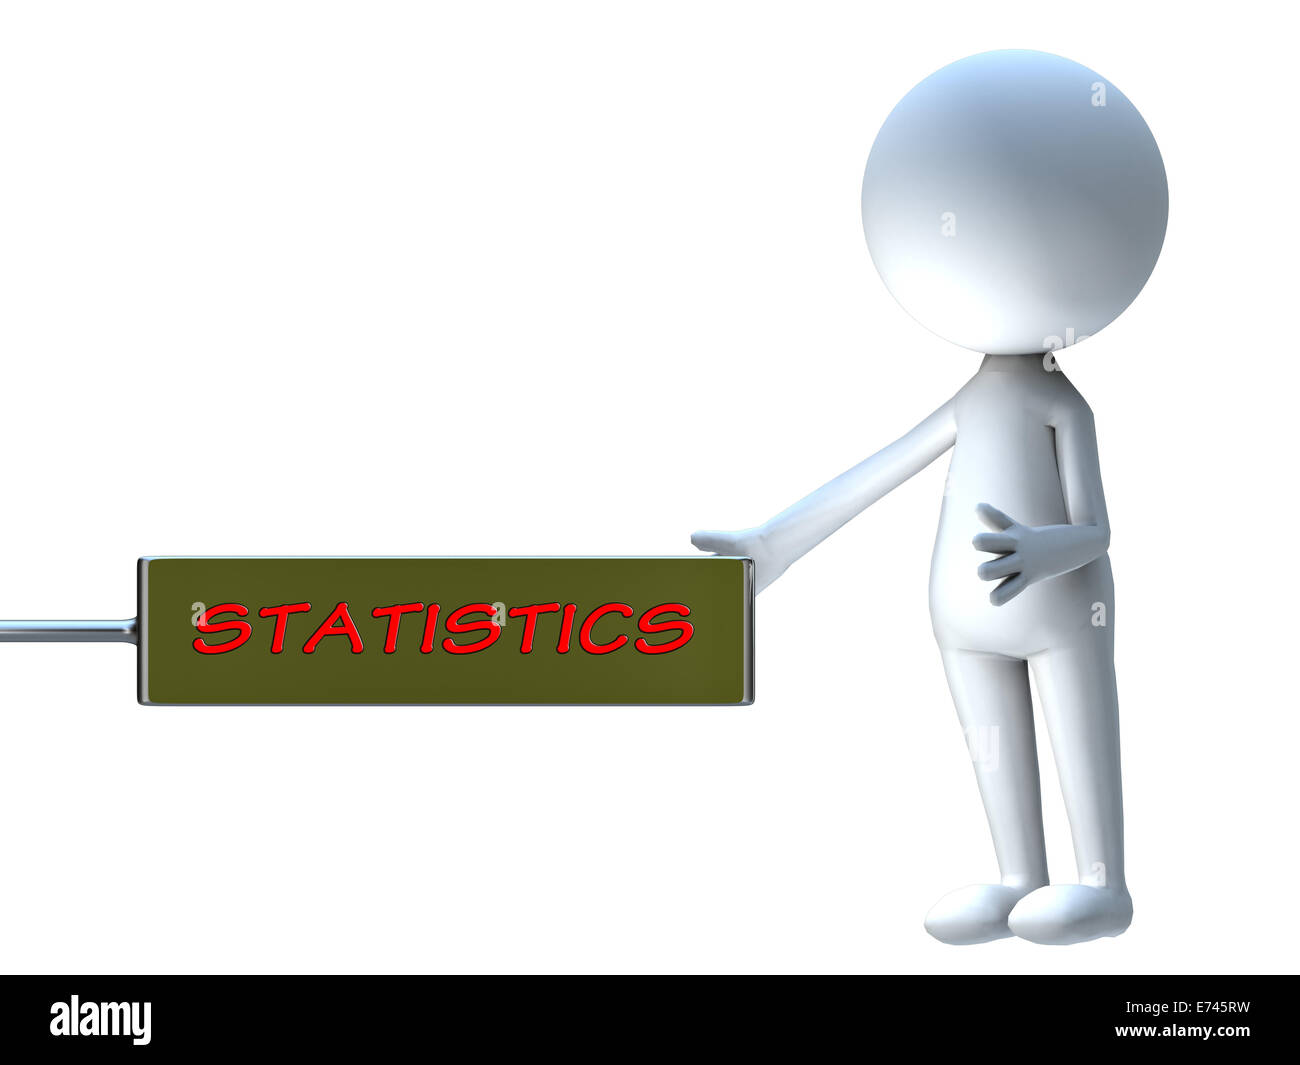 Statistiques mot dans tableau d'affichage pour adv ou autres fins utiliser Banque D'Images